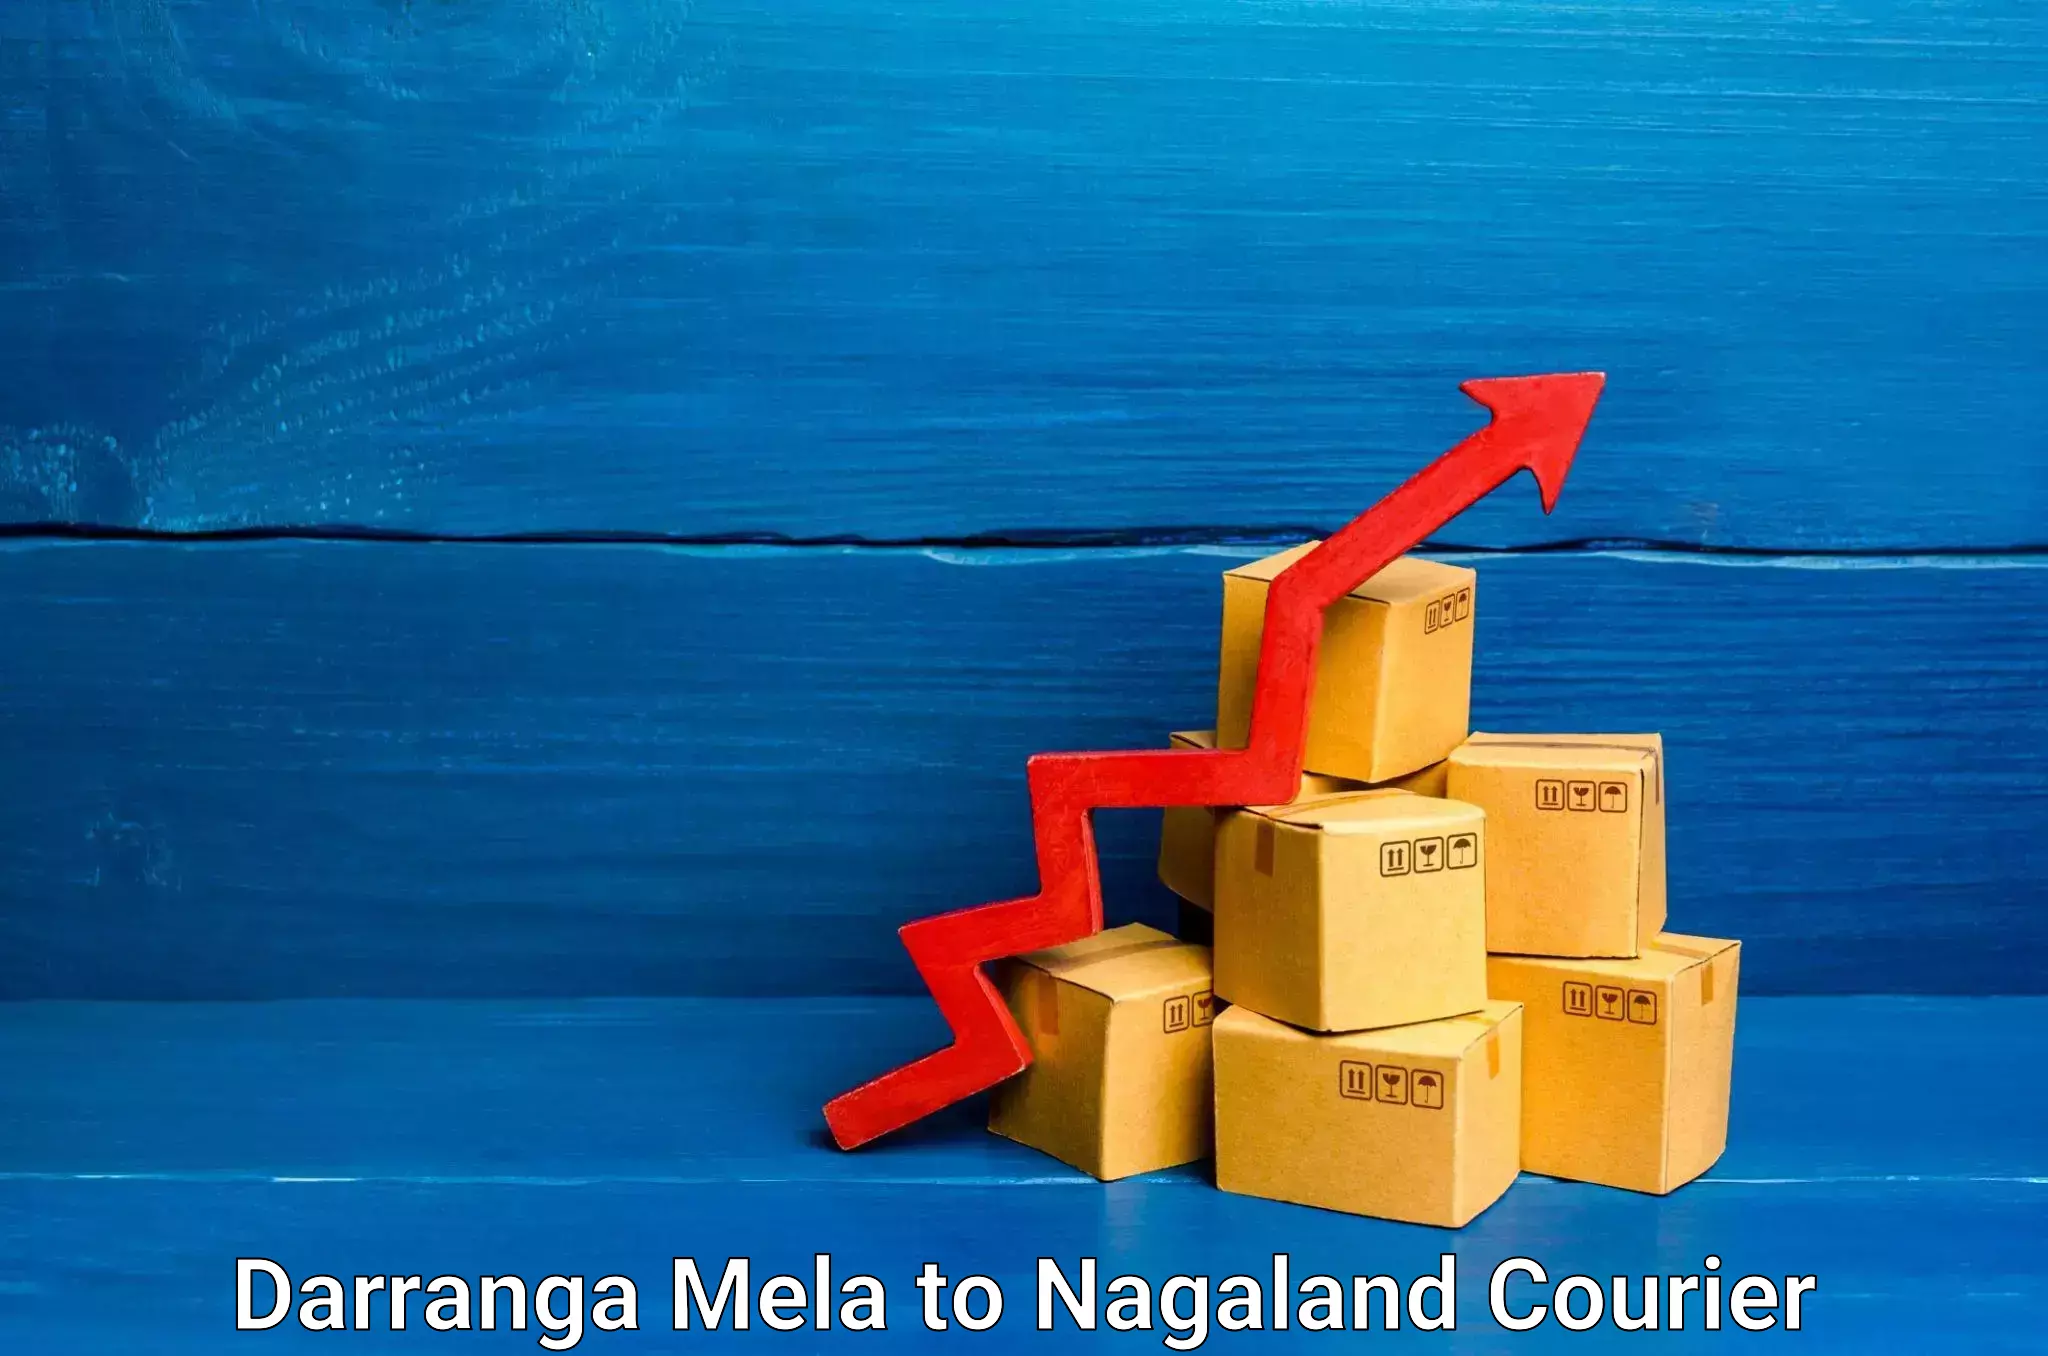 Expedited shipping methods Darranga Mela to Nagaland